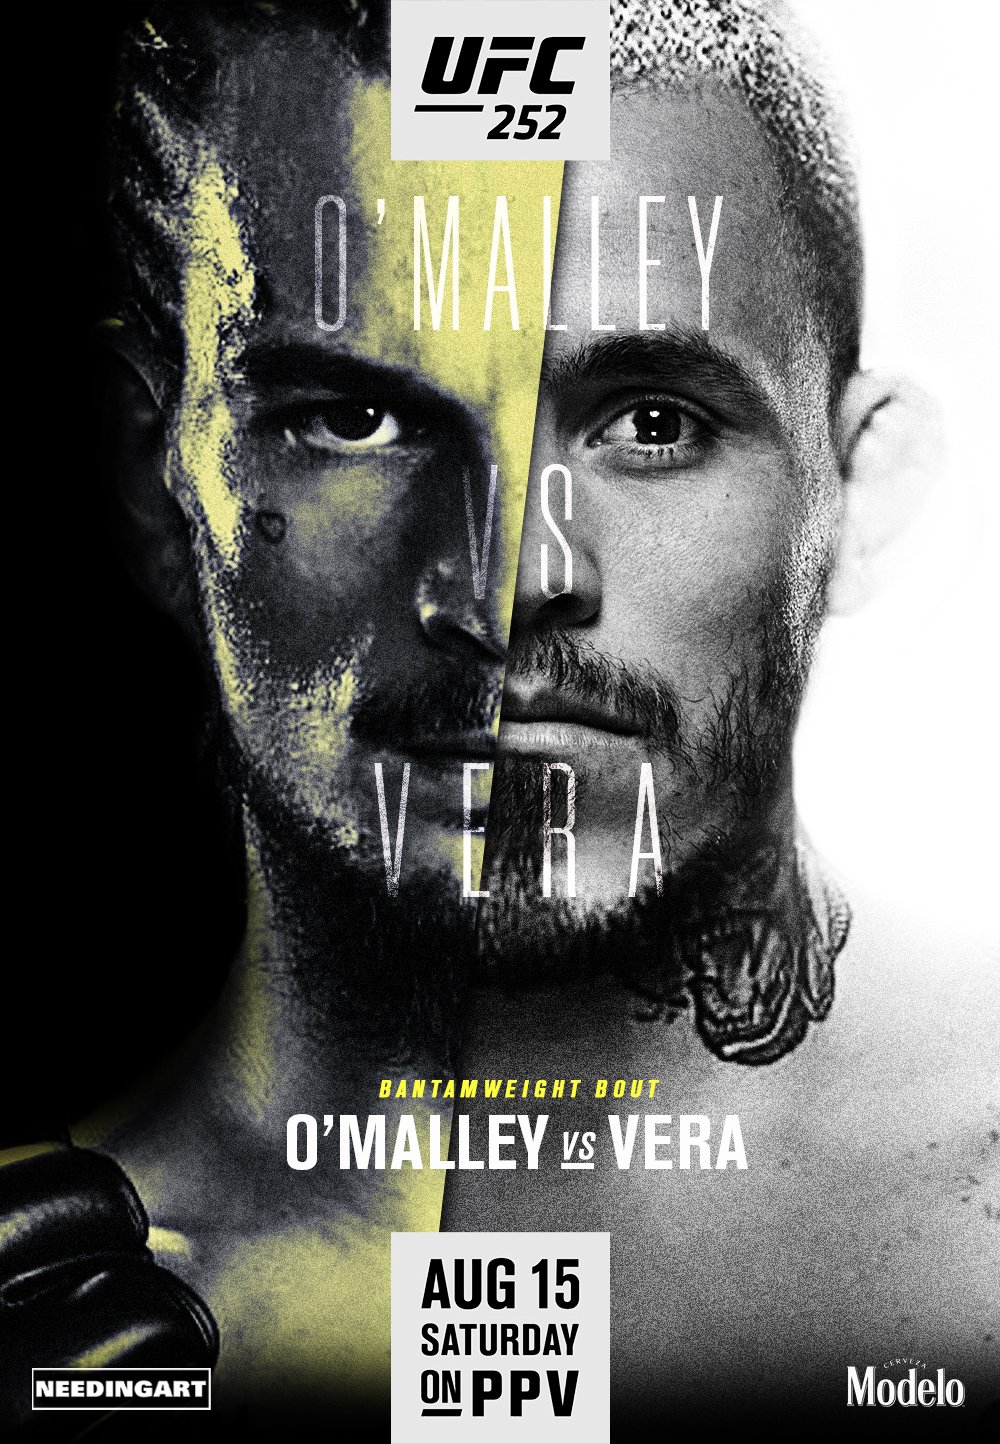 UFC 252 - Las vegas - Poster et affiche